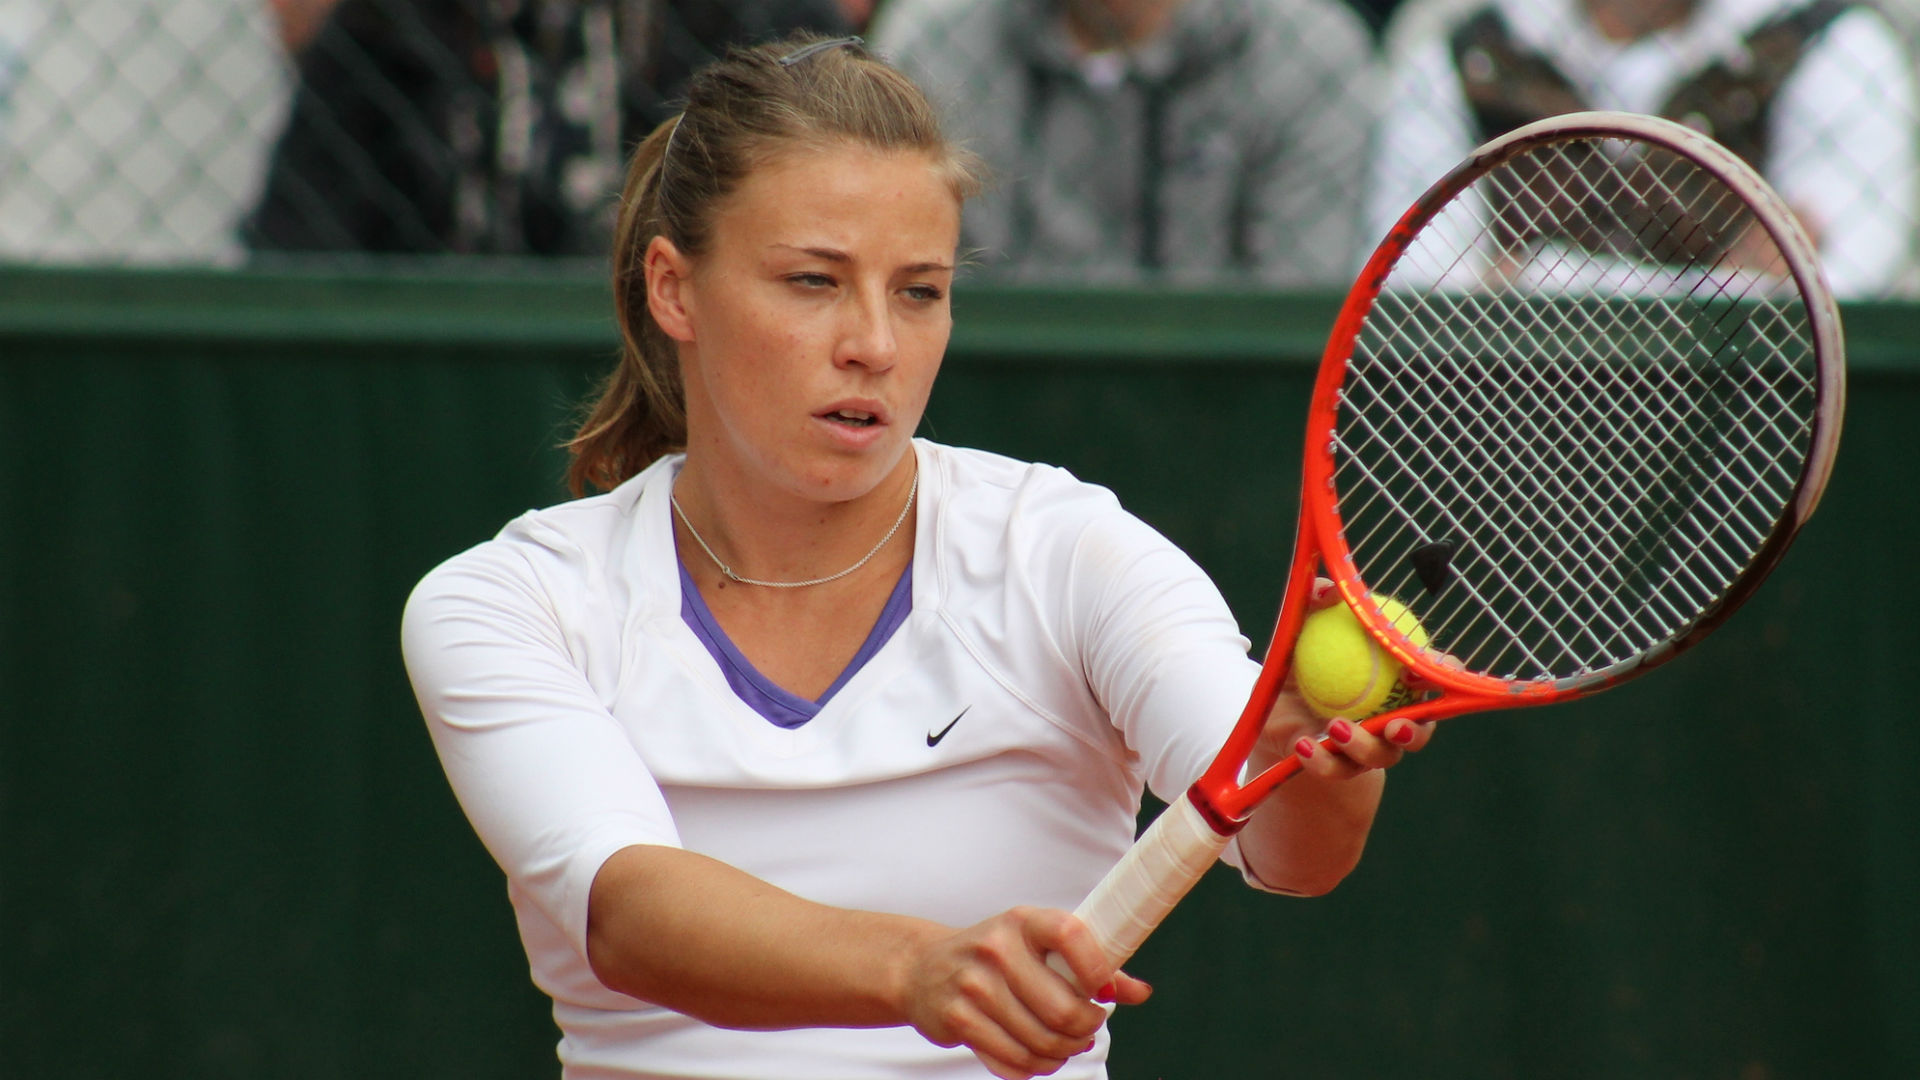 Roland Garros : Alicja Rosolska au troisième tour du double.  Jan Zieliński a déclaré forfait – Wiadomości